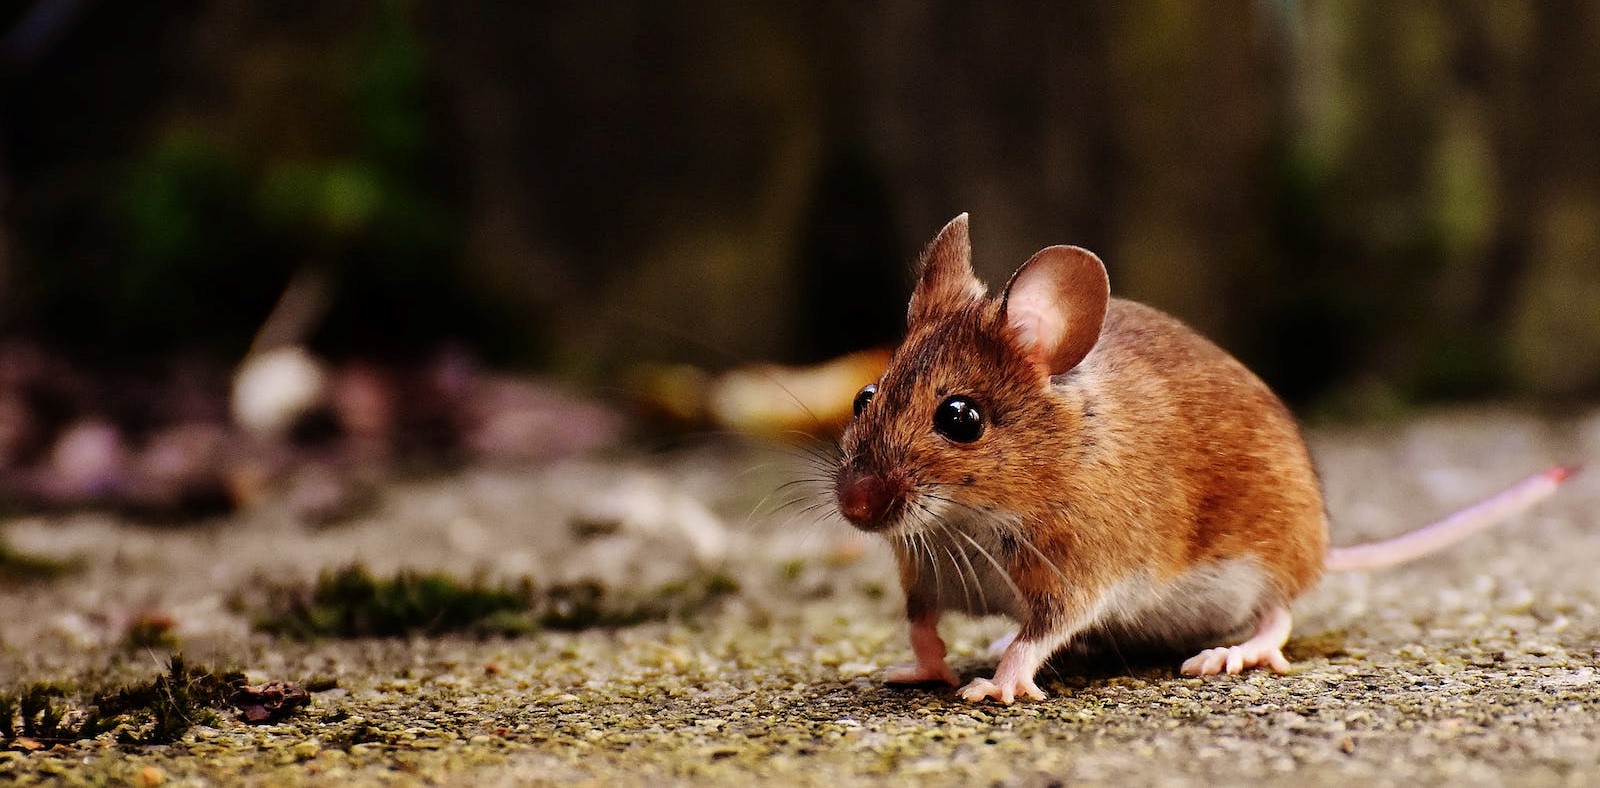 Wat is het beste gif tegen muizen